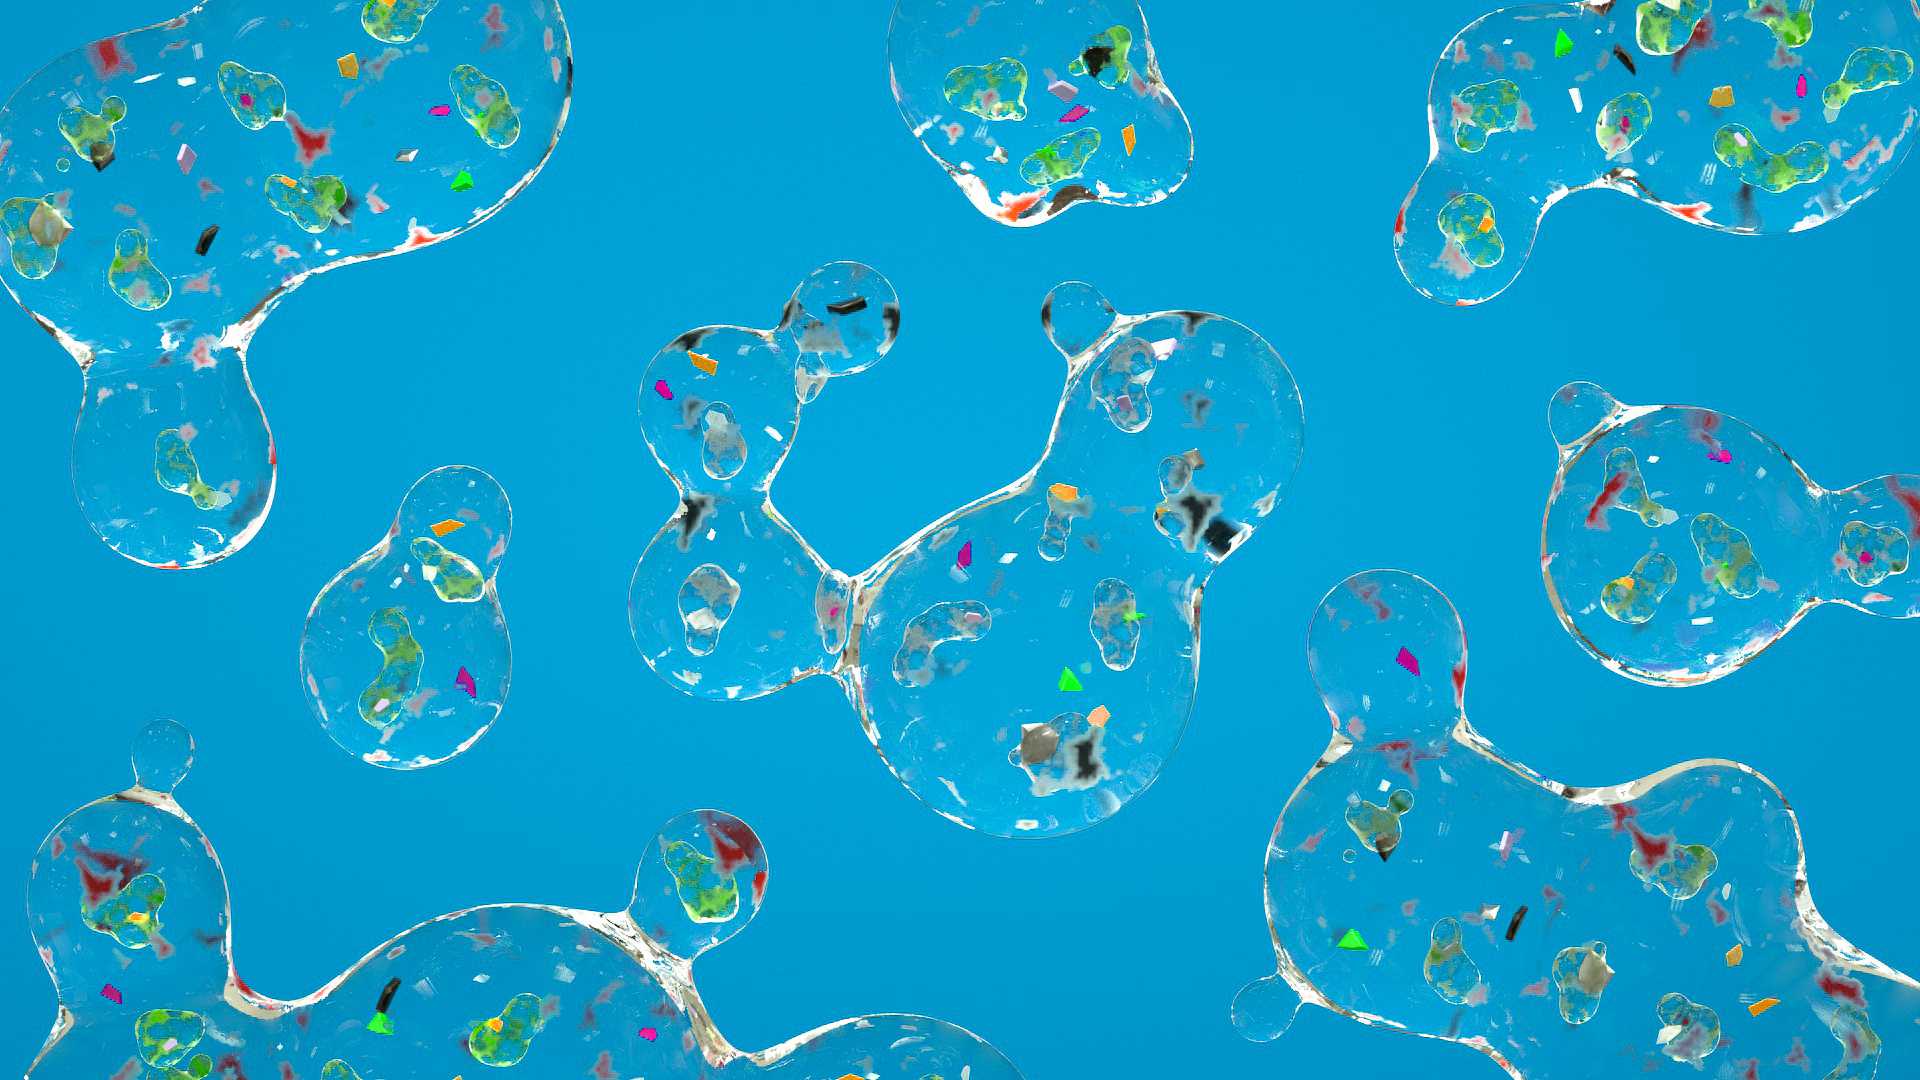 Лабораторные эксперименты подтвердили, что бактерии поглощают и переваривают пластик